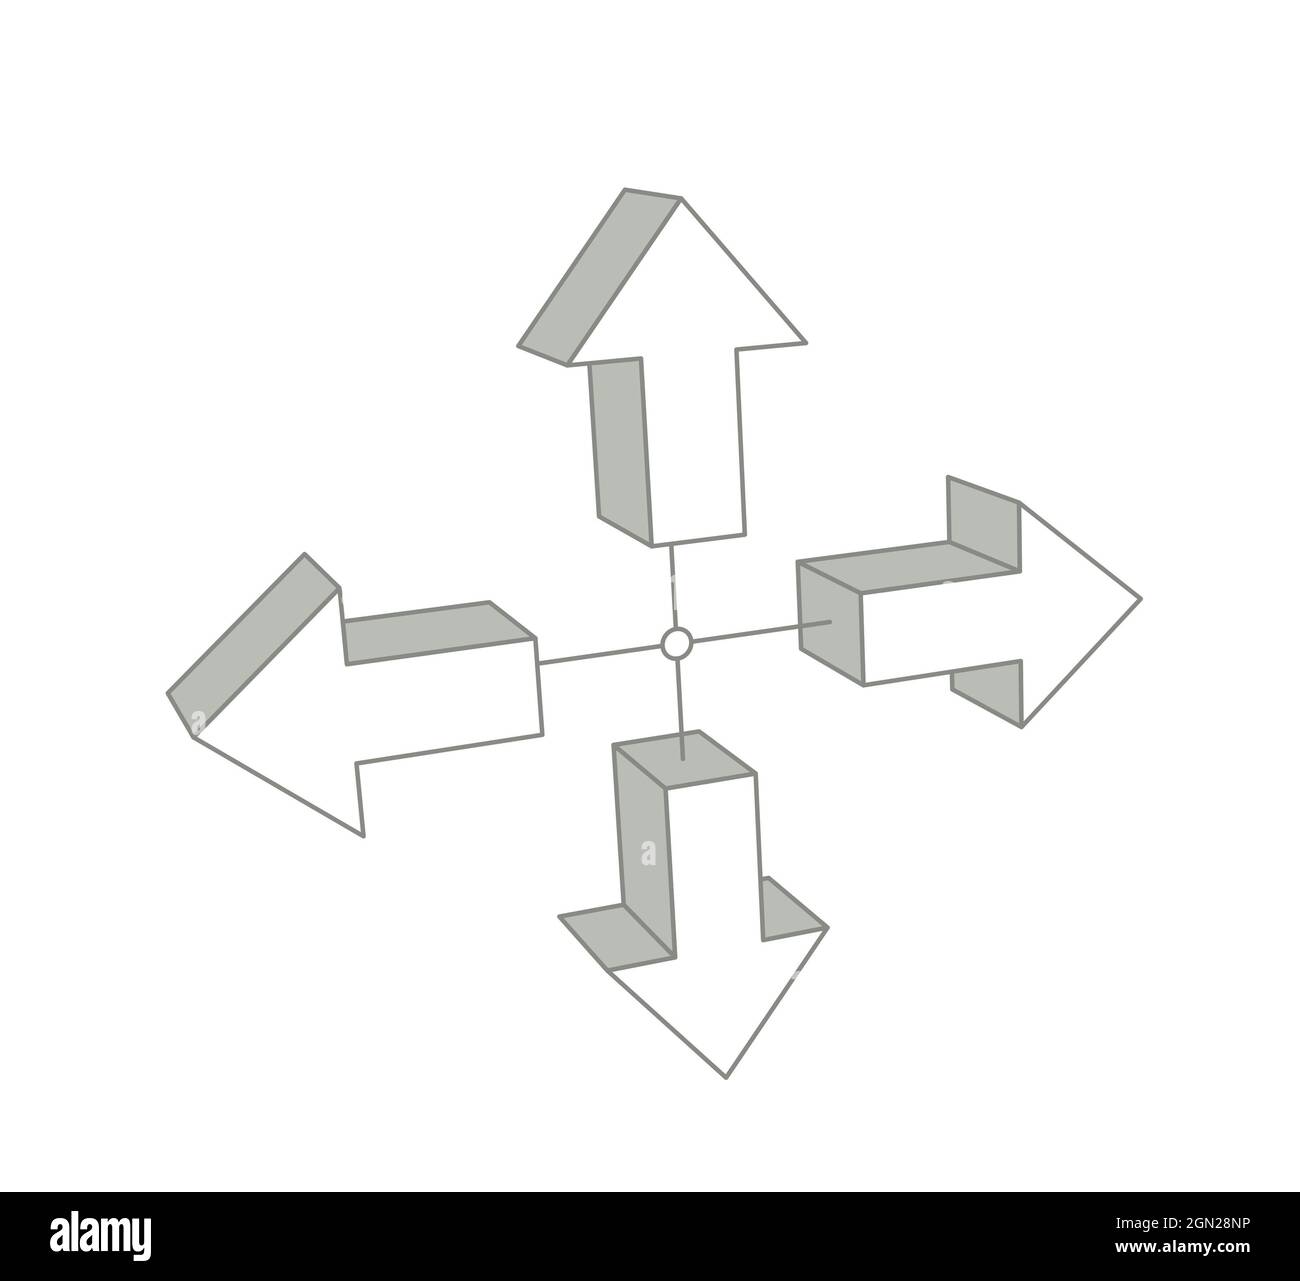 frecce in quattro direzioni, illustrazione 3d isolata su bianco, colore grigio Foto Stock